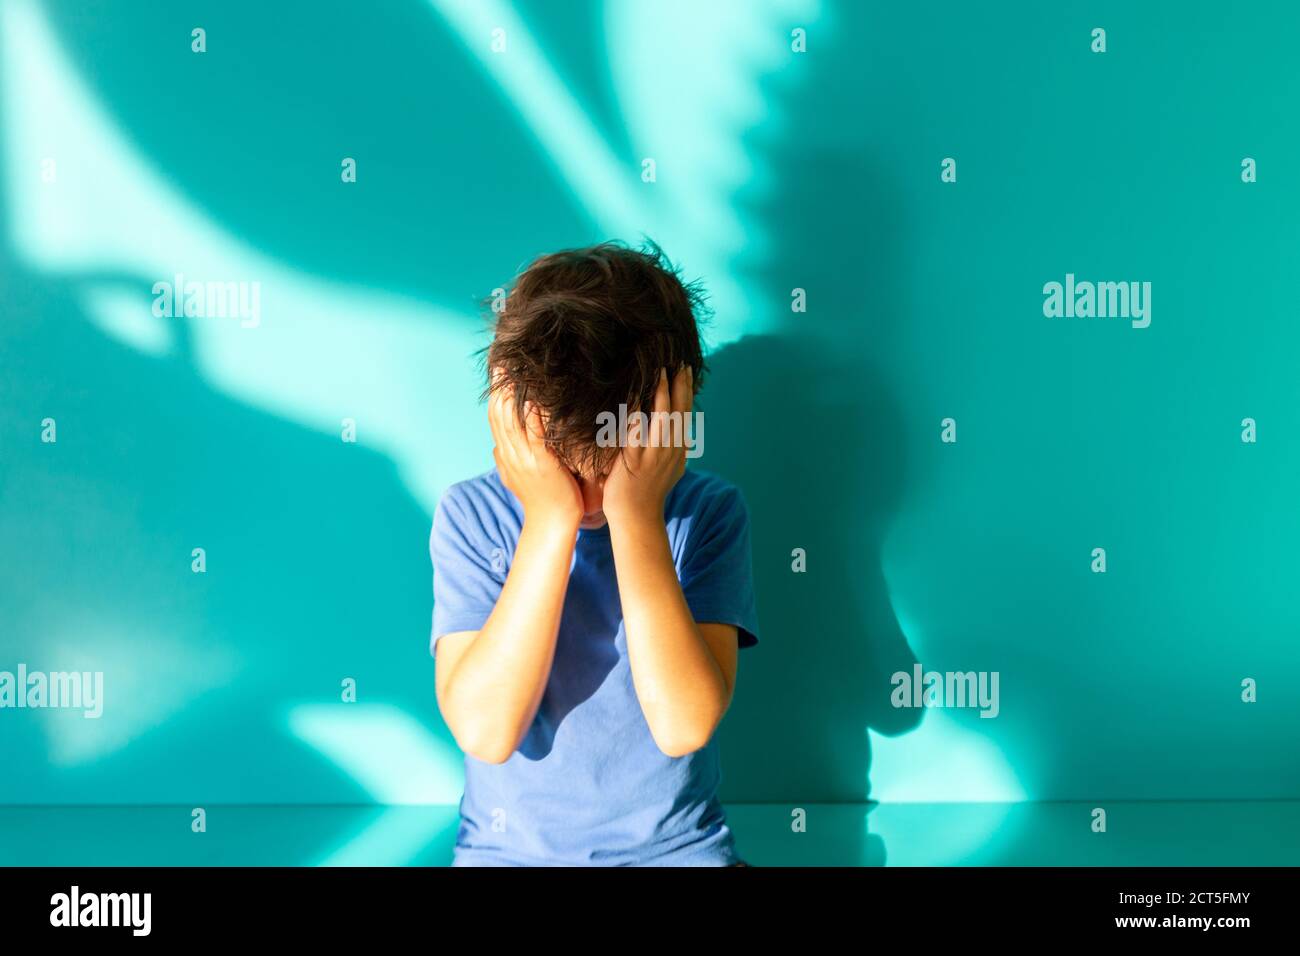 Portrait d'un garçon de brunette triste ou frustré dans une chemise bleue. Pouces vers le haut. Fond turquoise avec ombre. Éducation. Regarder et sourire à l'appareil photo Banque D'Images